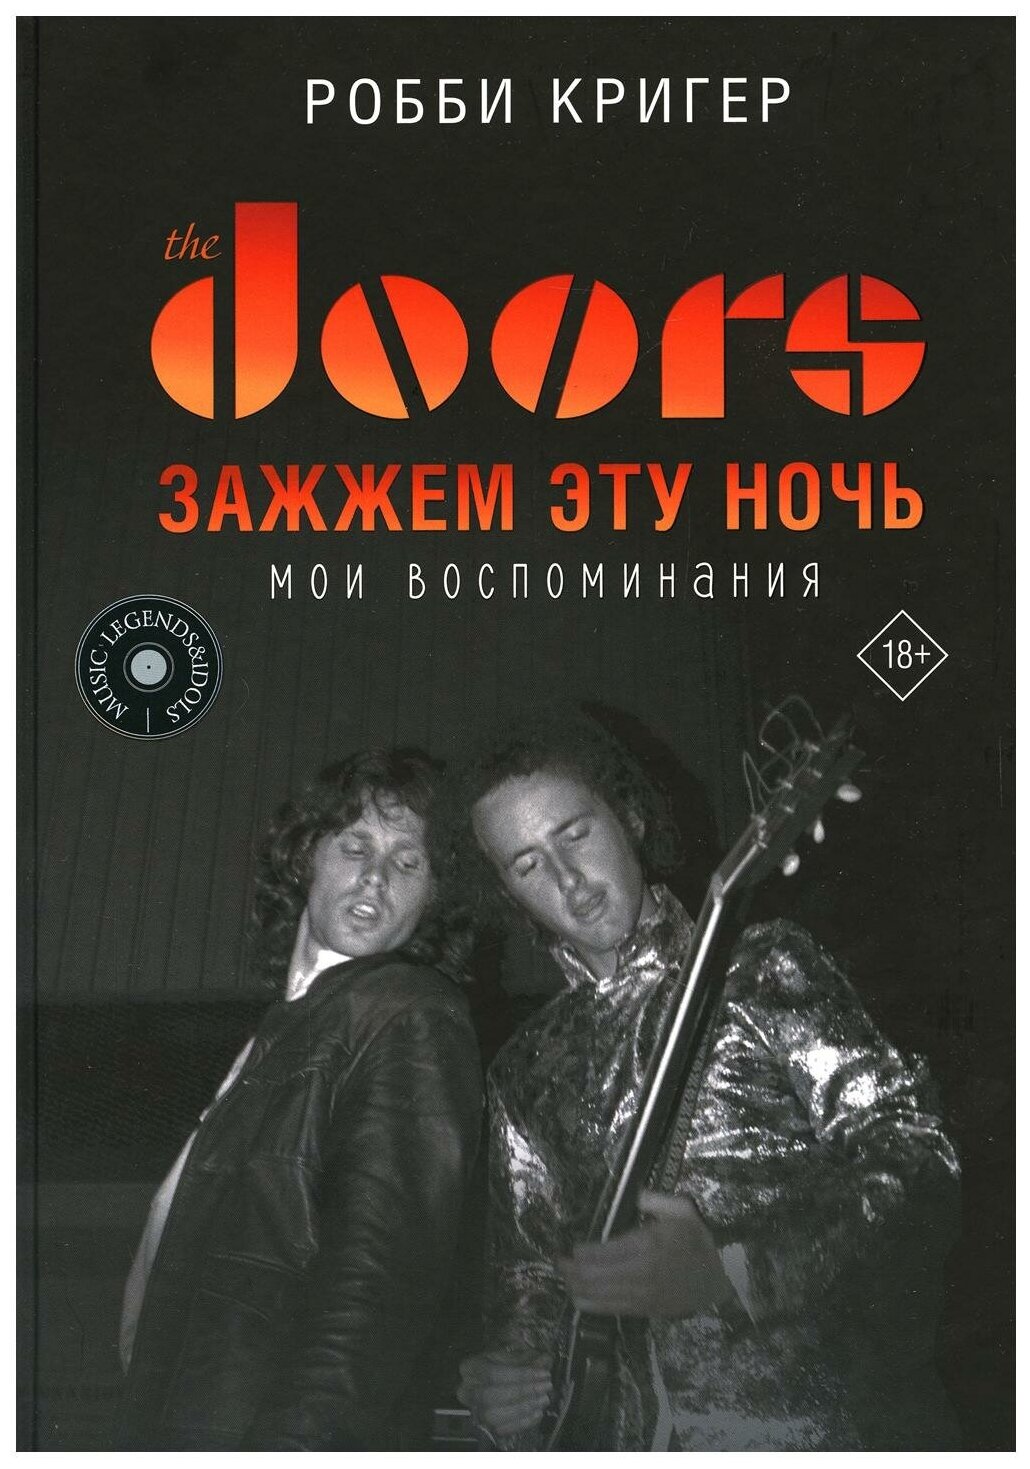 The Doors Зажжем эту ночь Мои воспоминания - фото №1